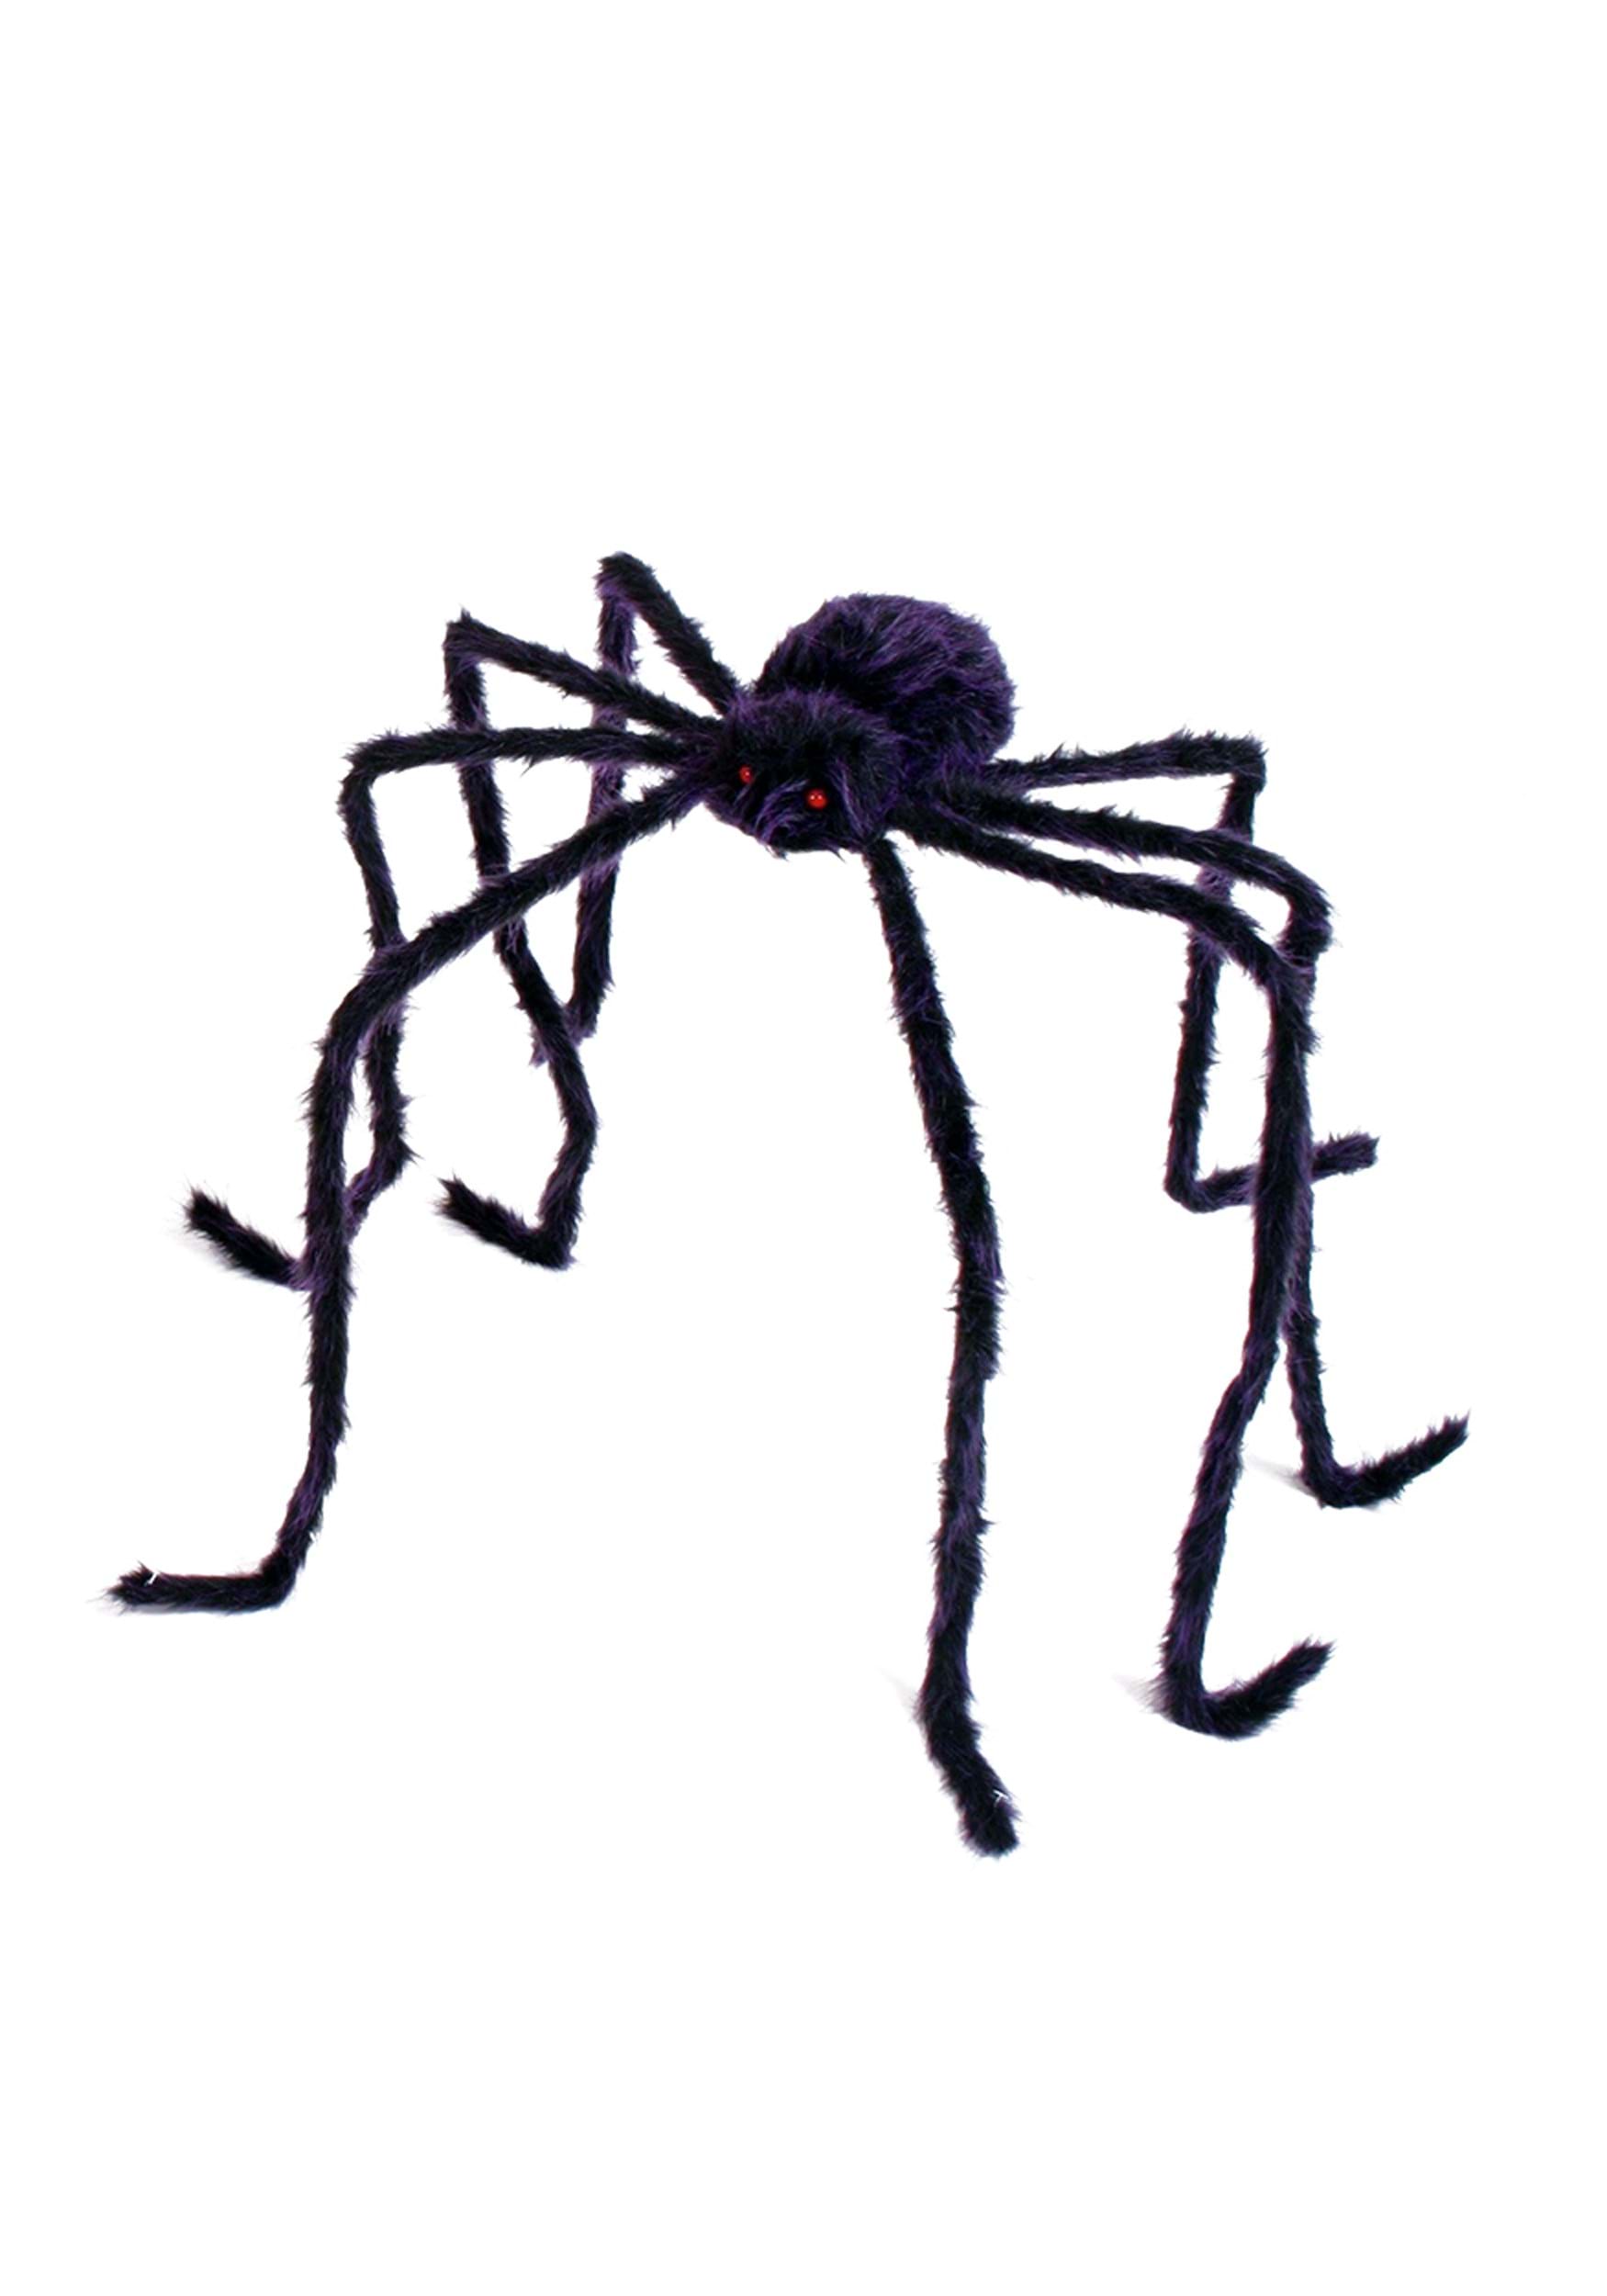 90″ Fuzzy Spider Decor